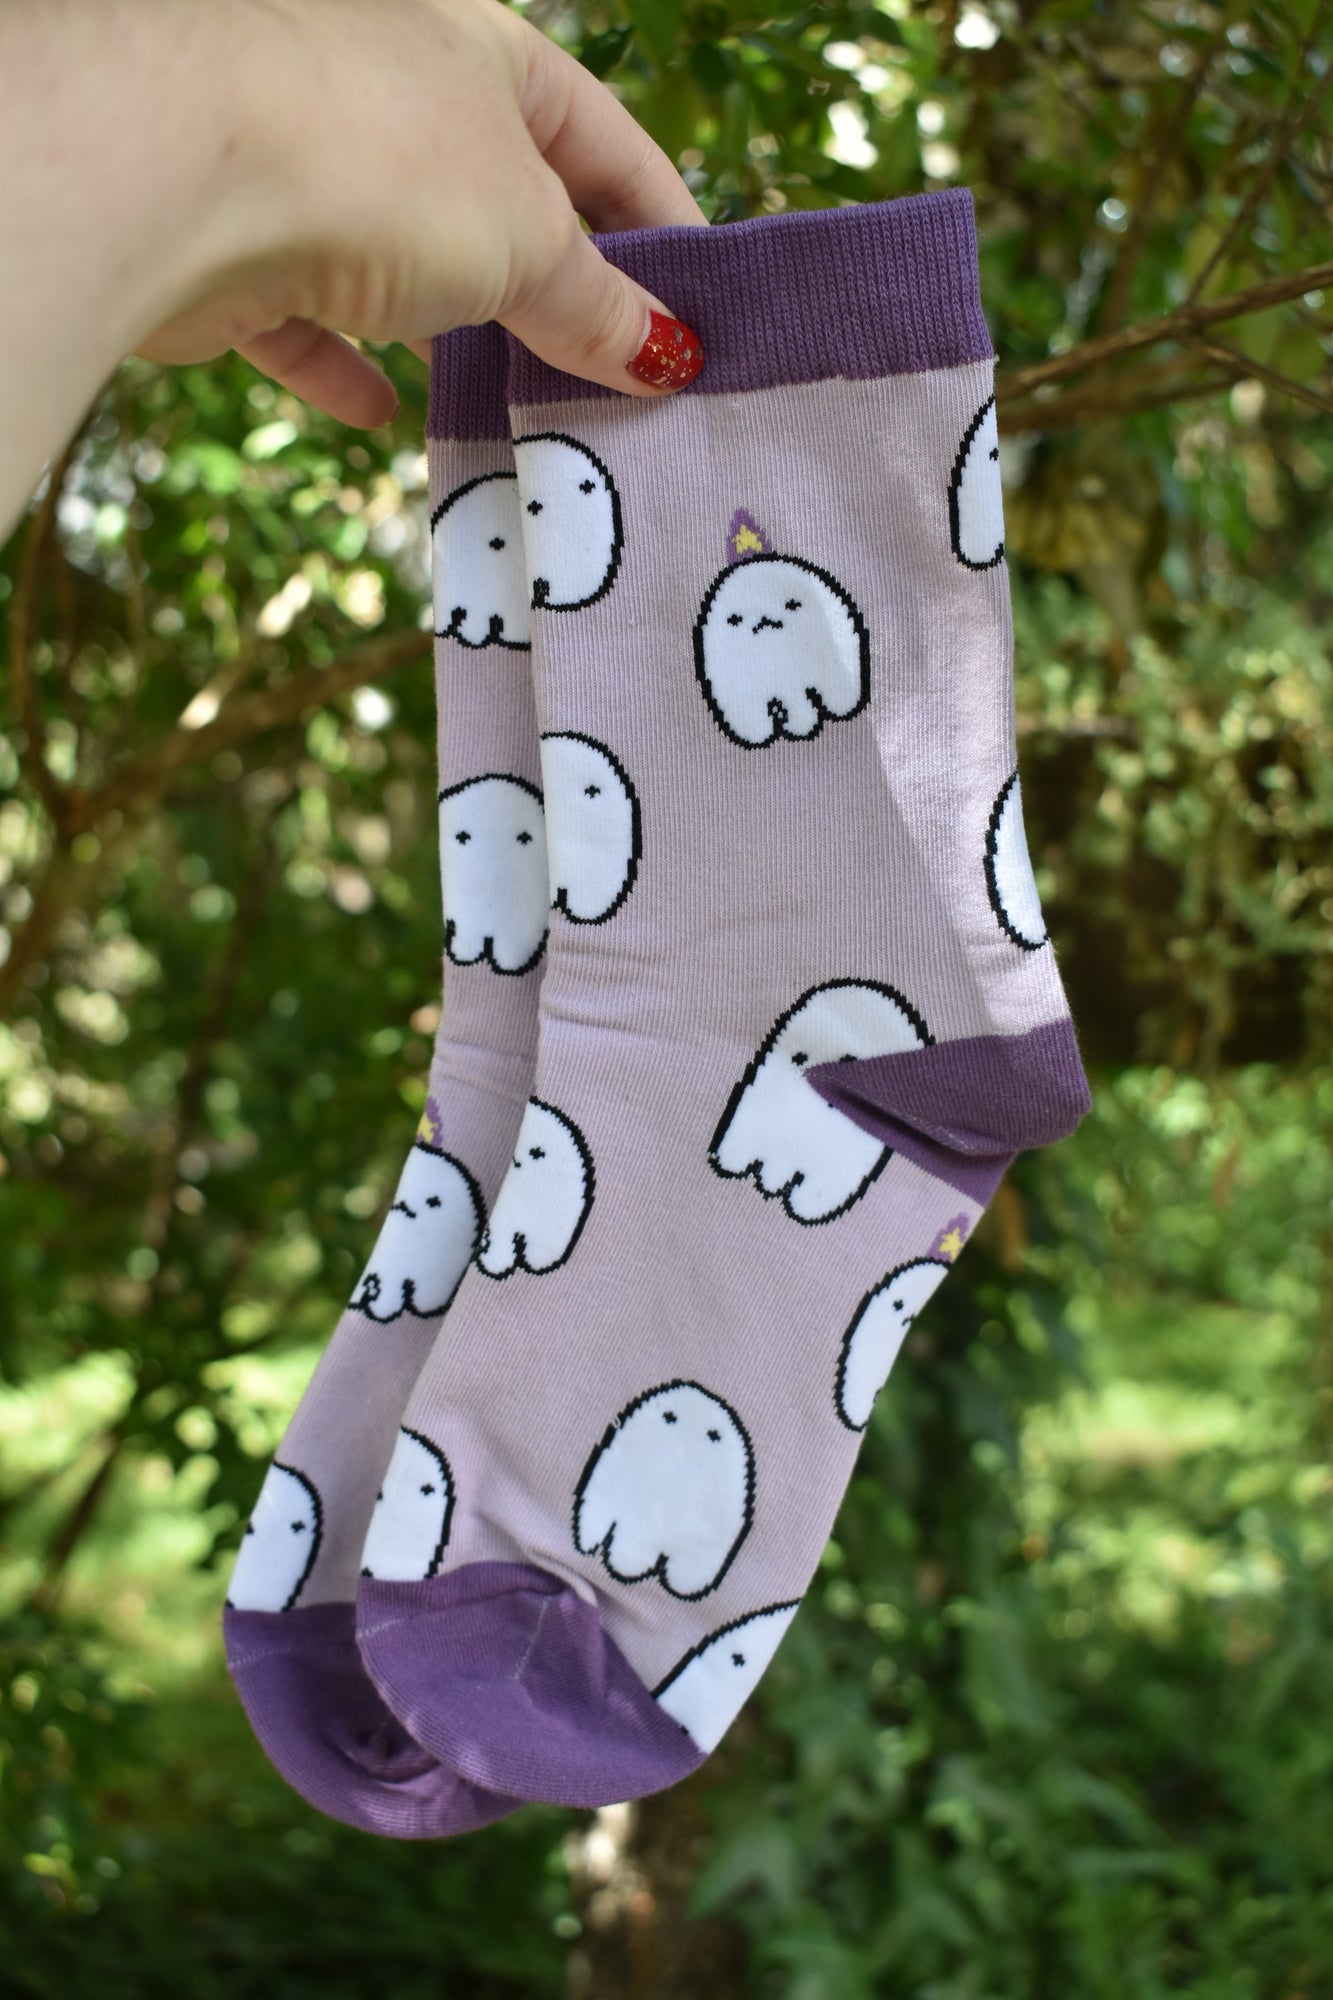 Ghostie socks